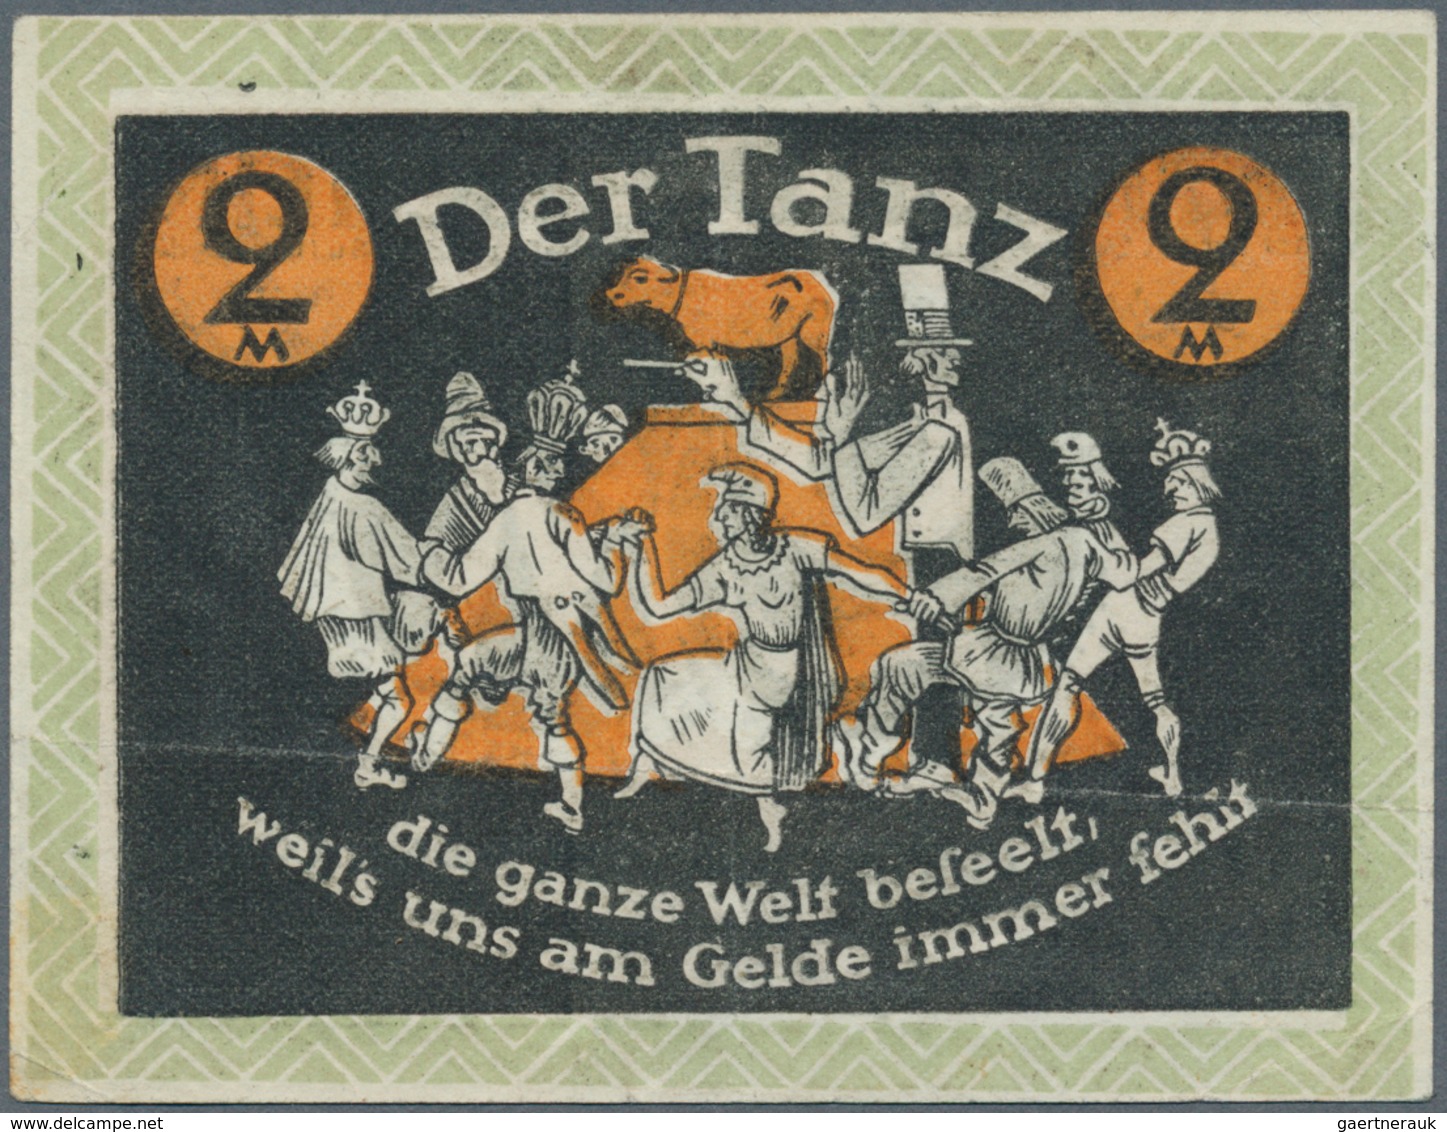 Deutschland - Notgeld - Rheinland: Düsseldorf, Die Vergnügungskommission, 2 Mark, 28.12.1921, Erh. I - [11] Emisiones Locales